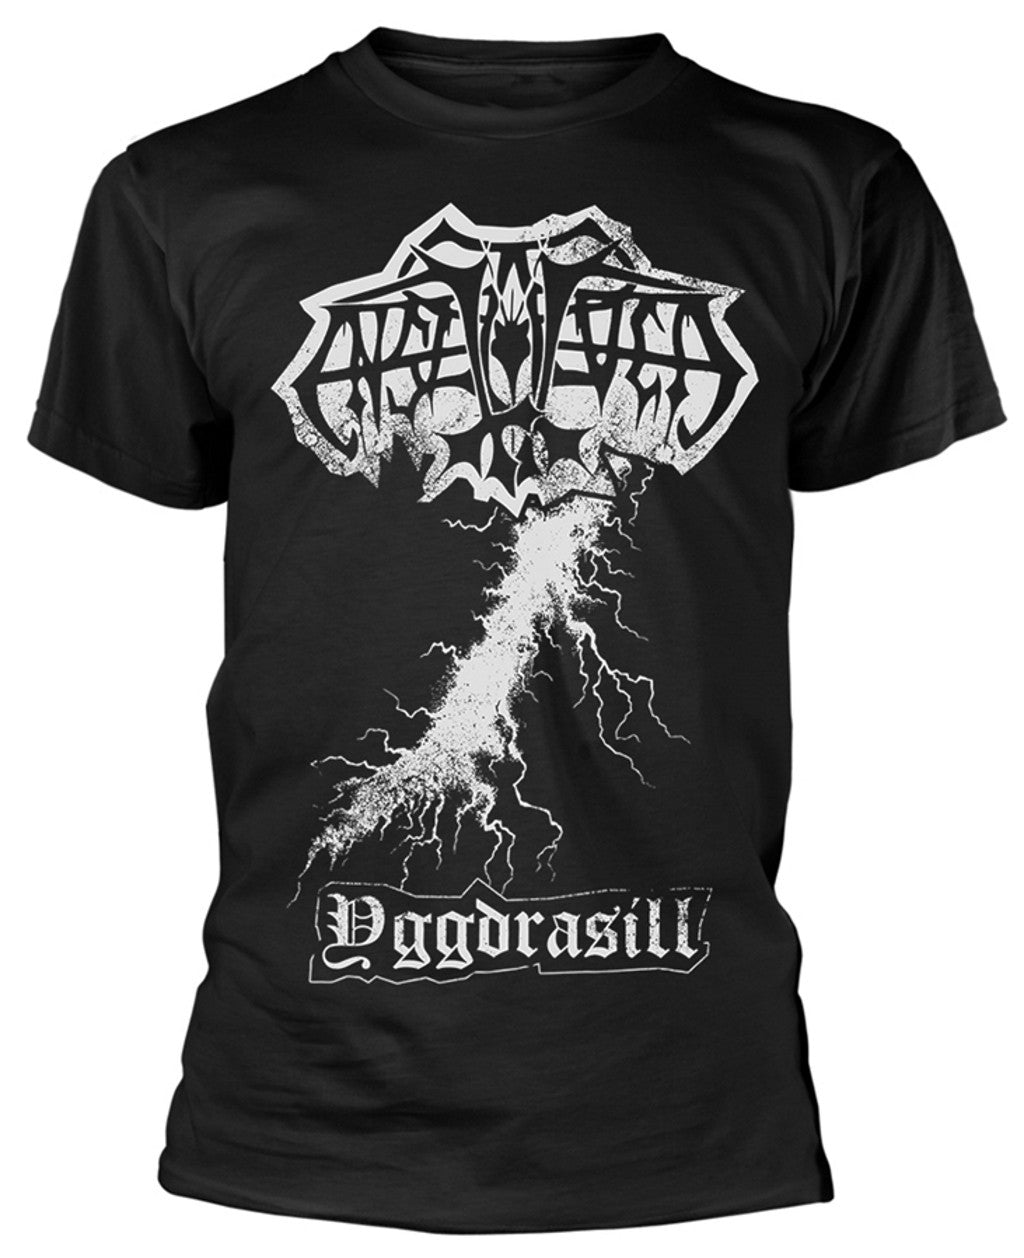 Enslaved - Yggdrasill Short Sleeved T-shirt